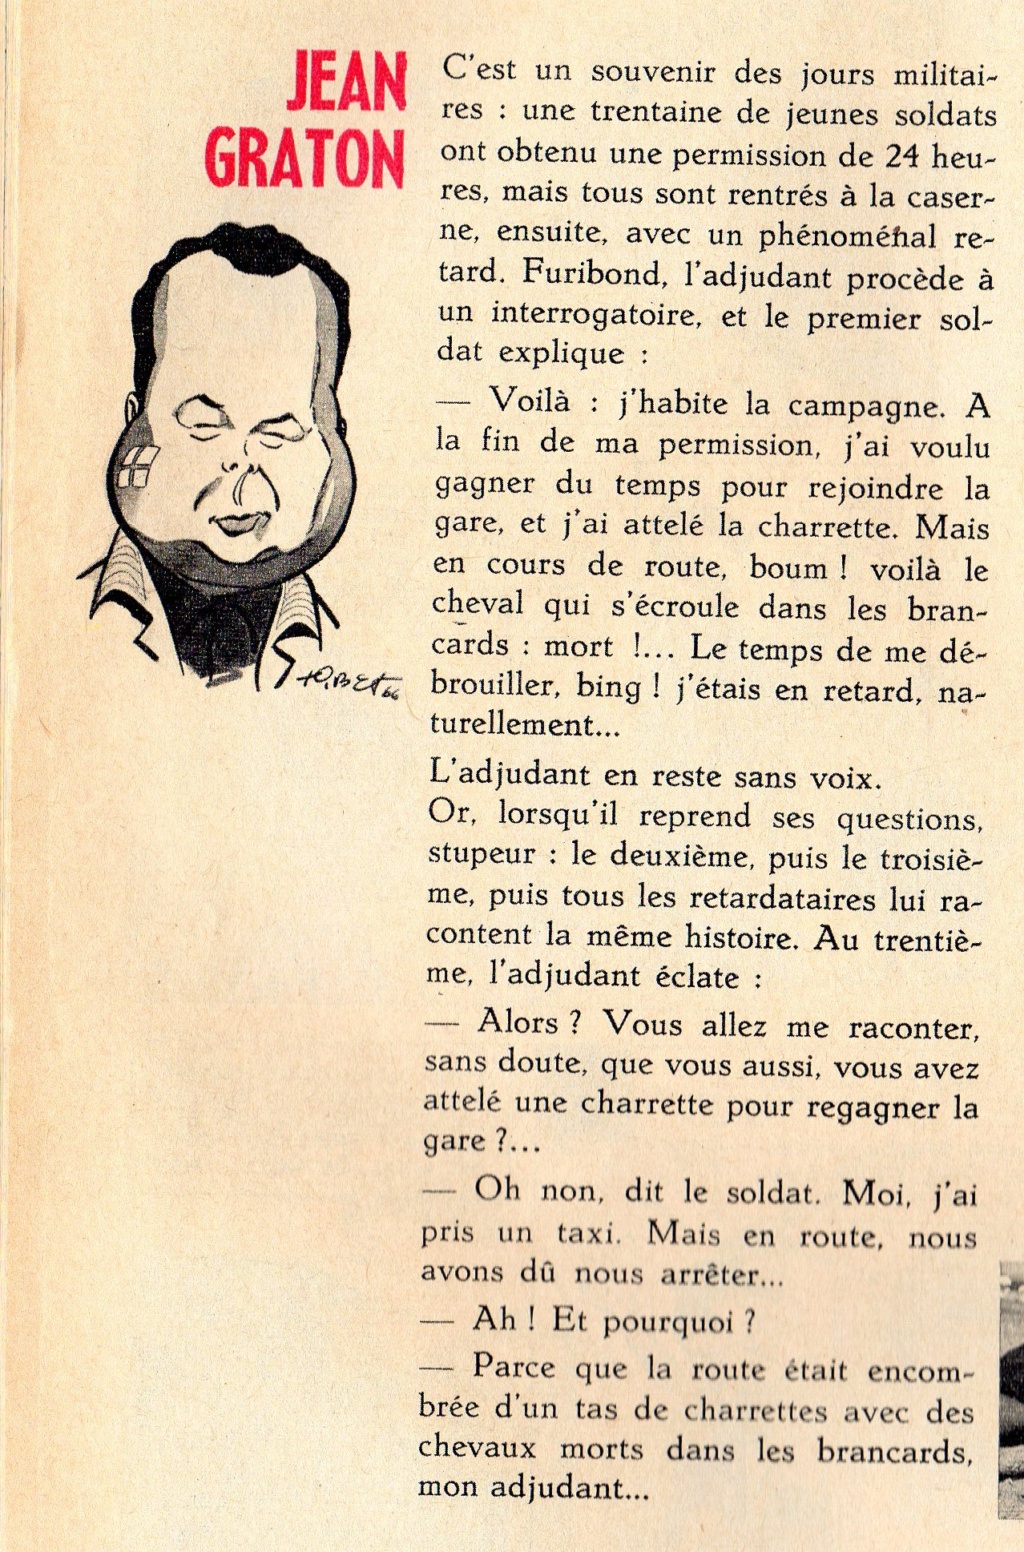 jean - Les articles sur Jean Graton dans le journal Tintin - Page 2 Jean_g85